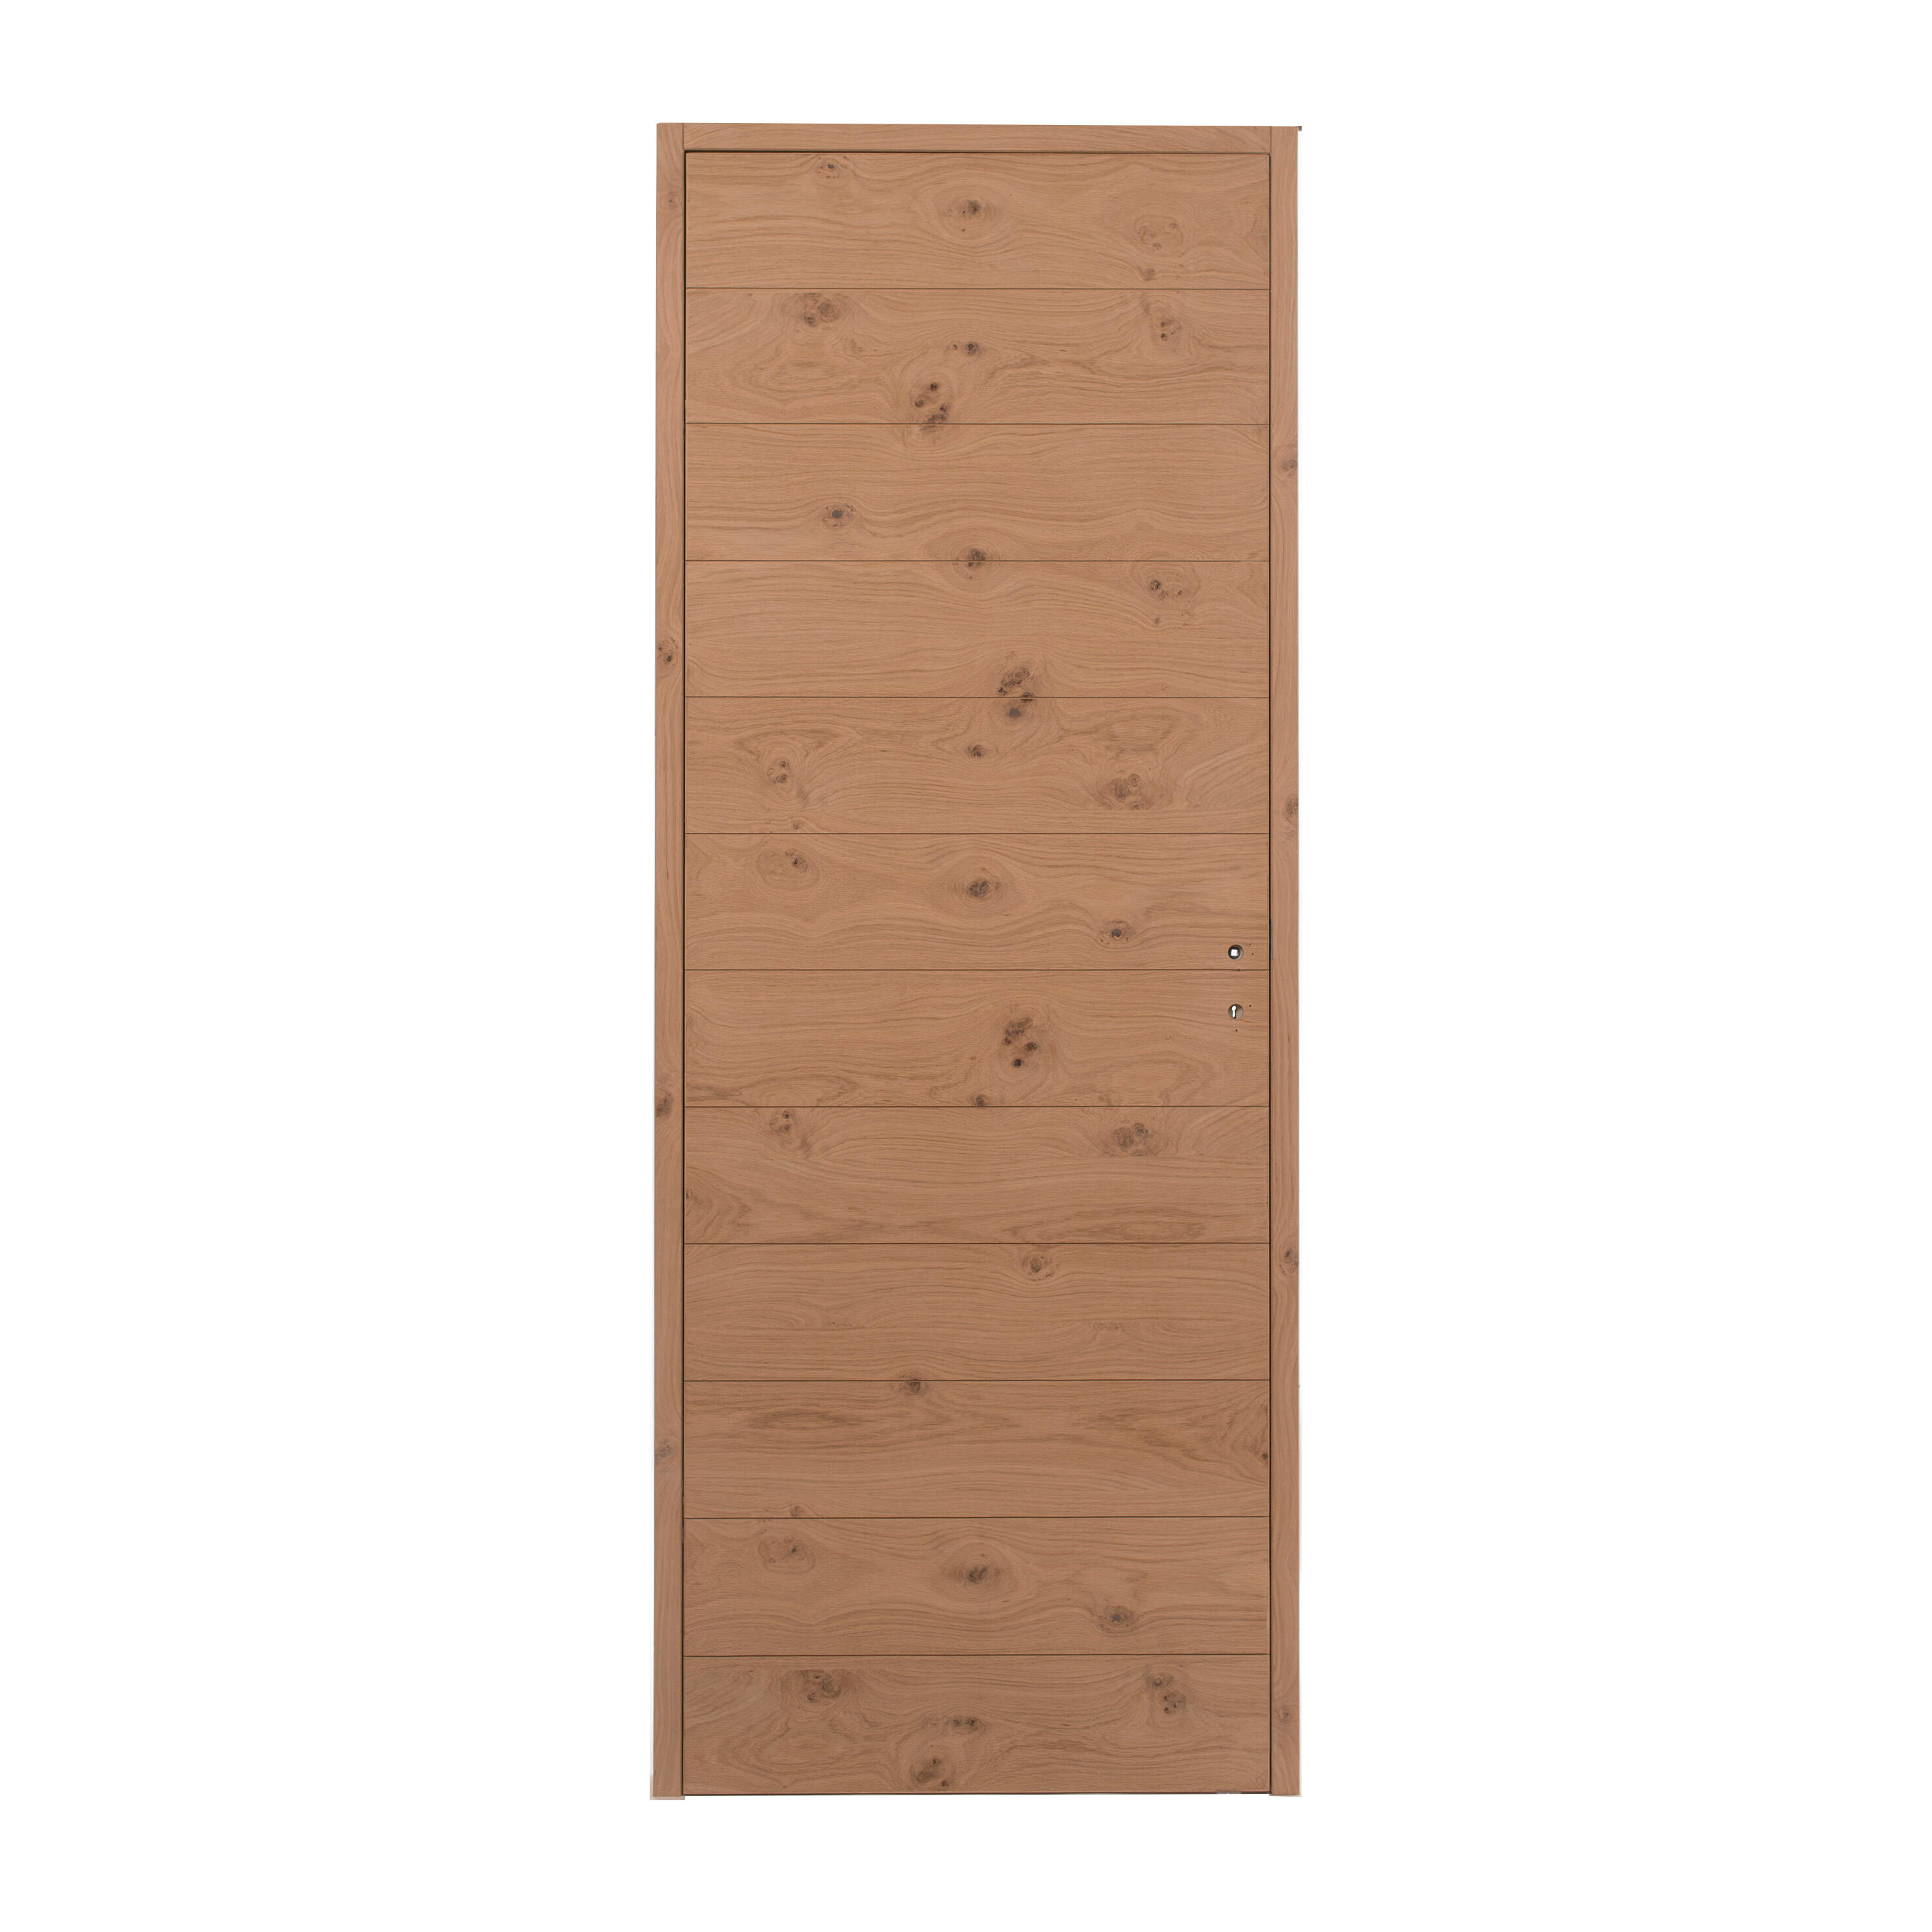 Porte document en bois brut format A4 (30 cm x 21 cm) Résultats page pour